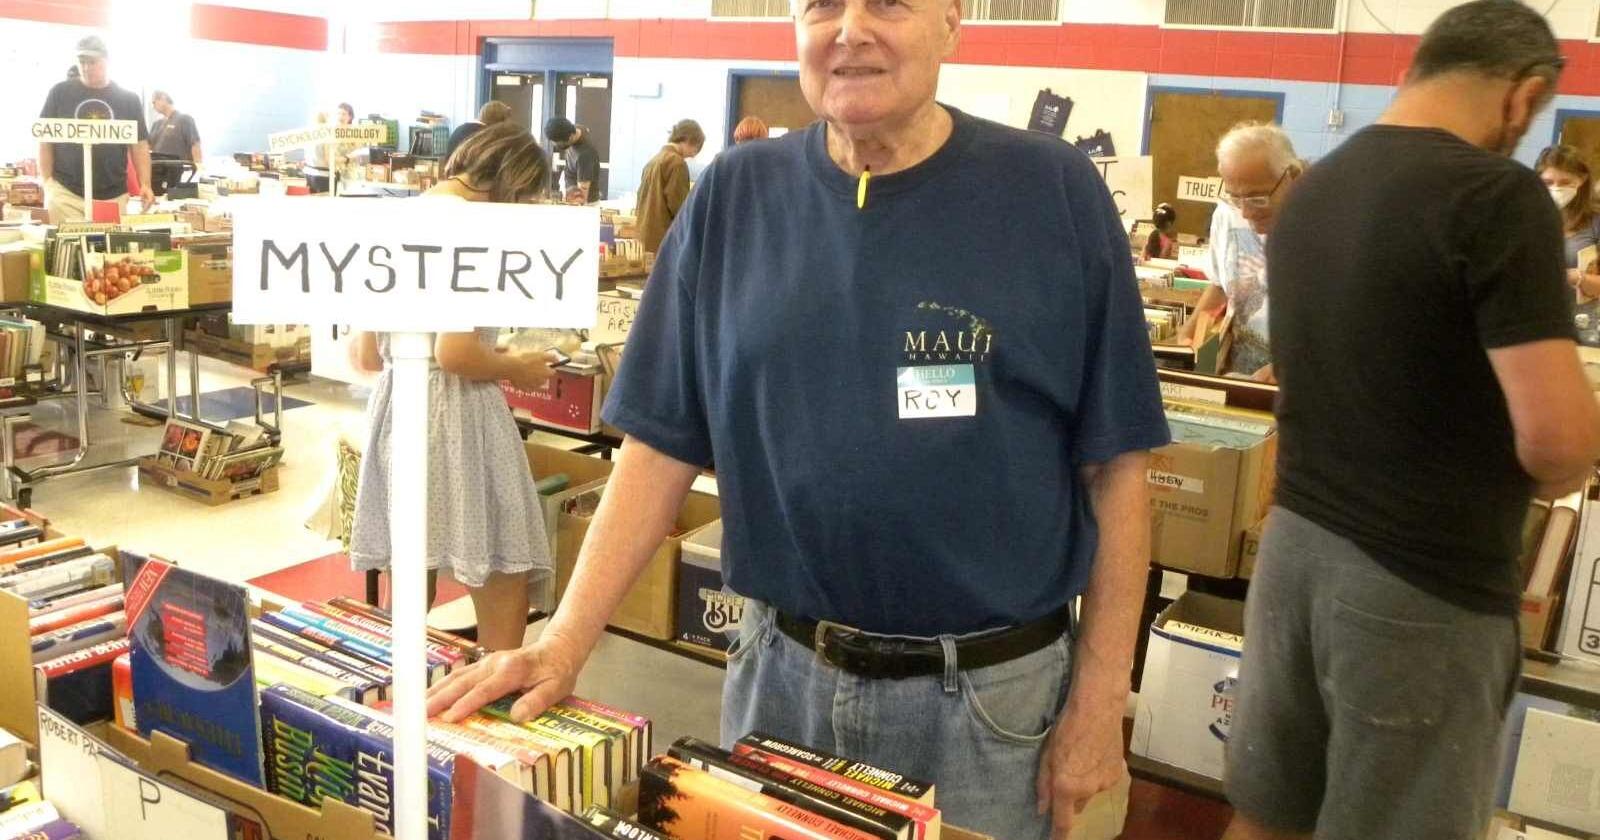 Shoppers, volunteers enjoyed used book sale in Bernardsville